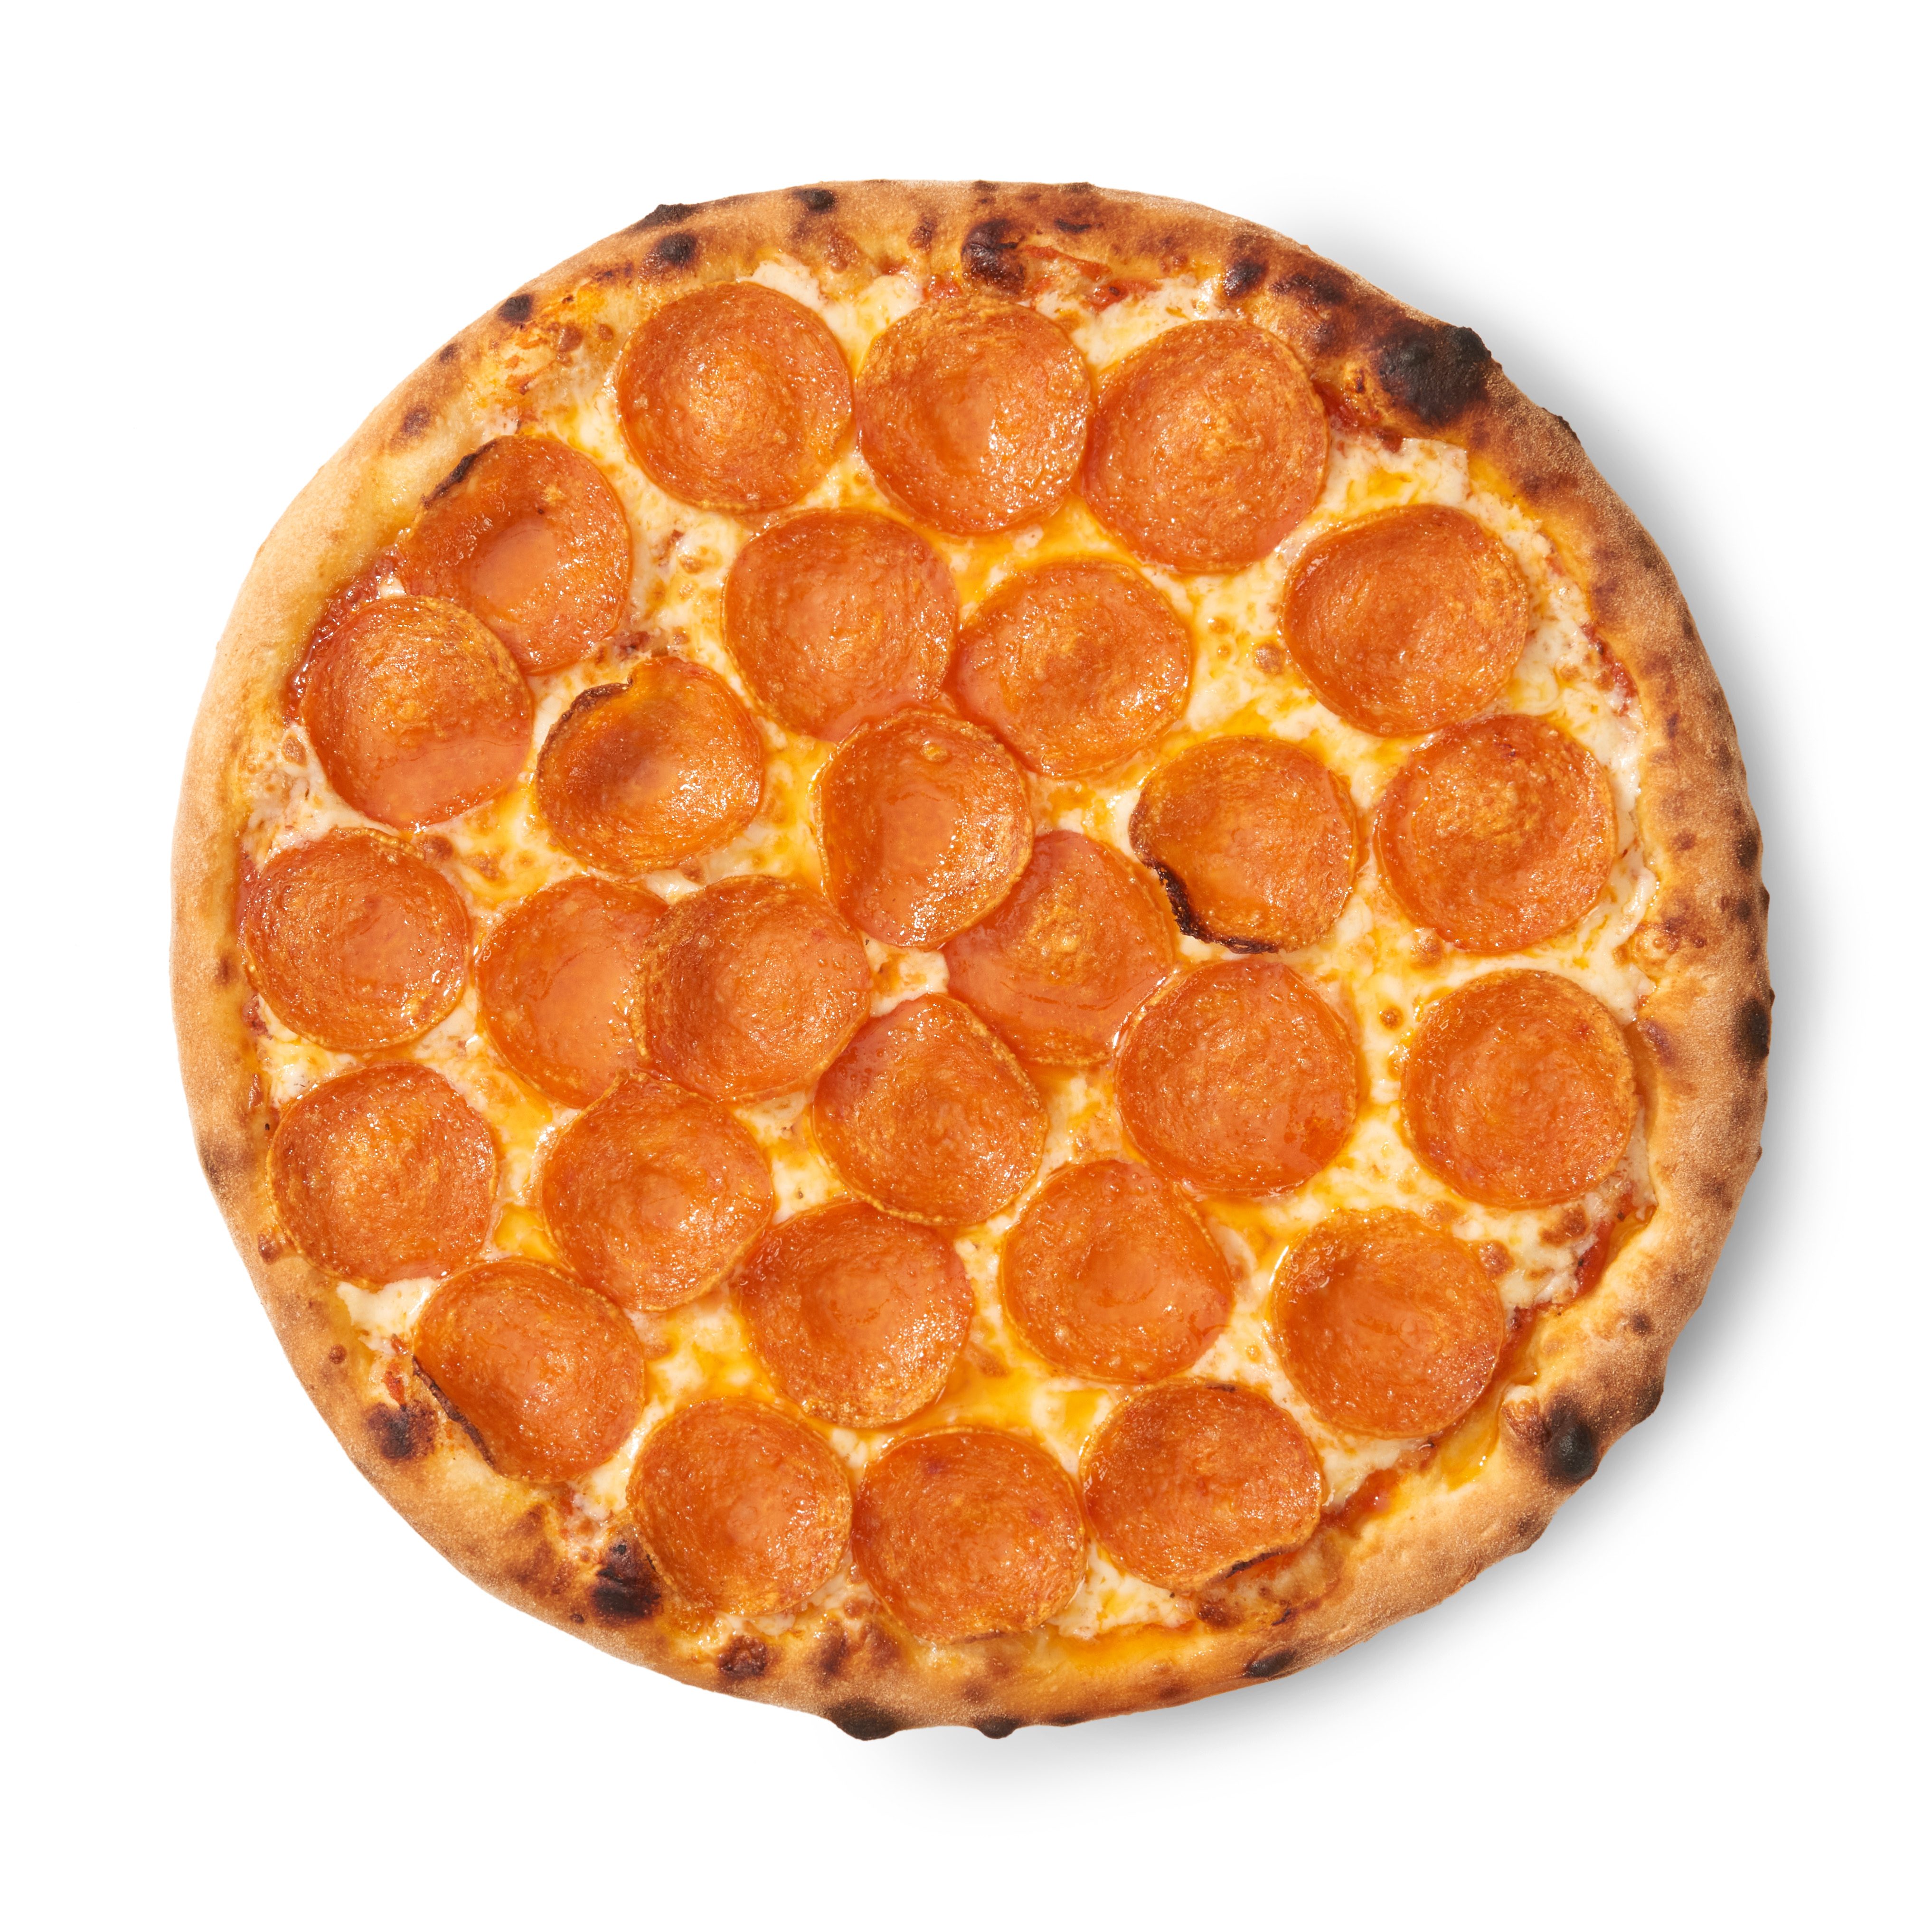 сколько хлебных единиц в куске пиццы пепперони фото 102